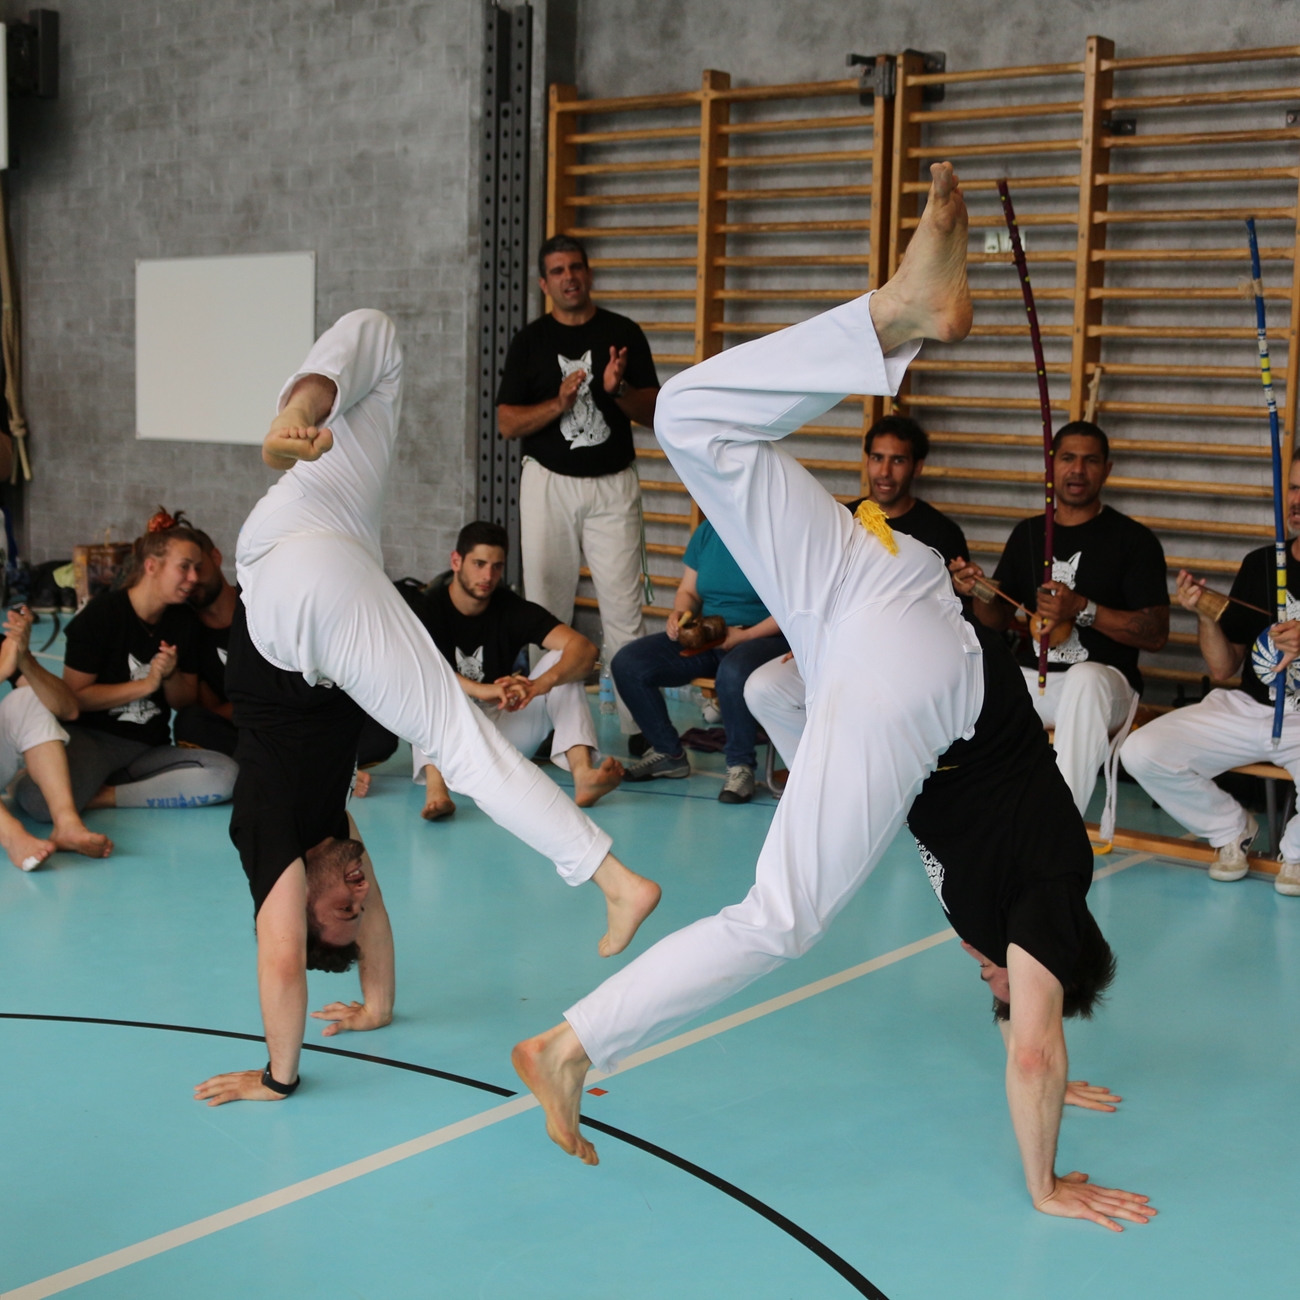 Capoeiratraining Spiel4